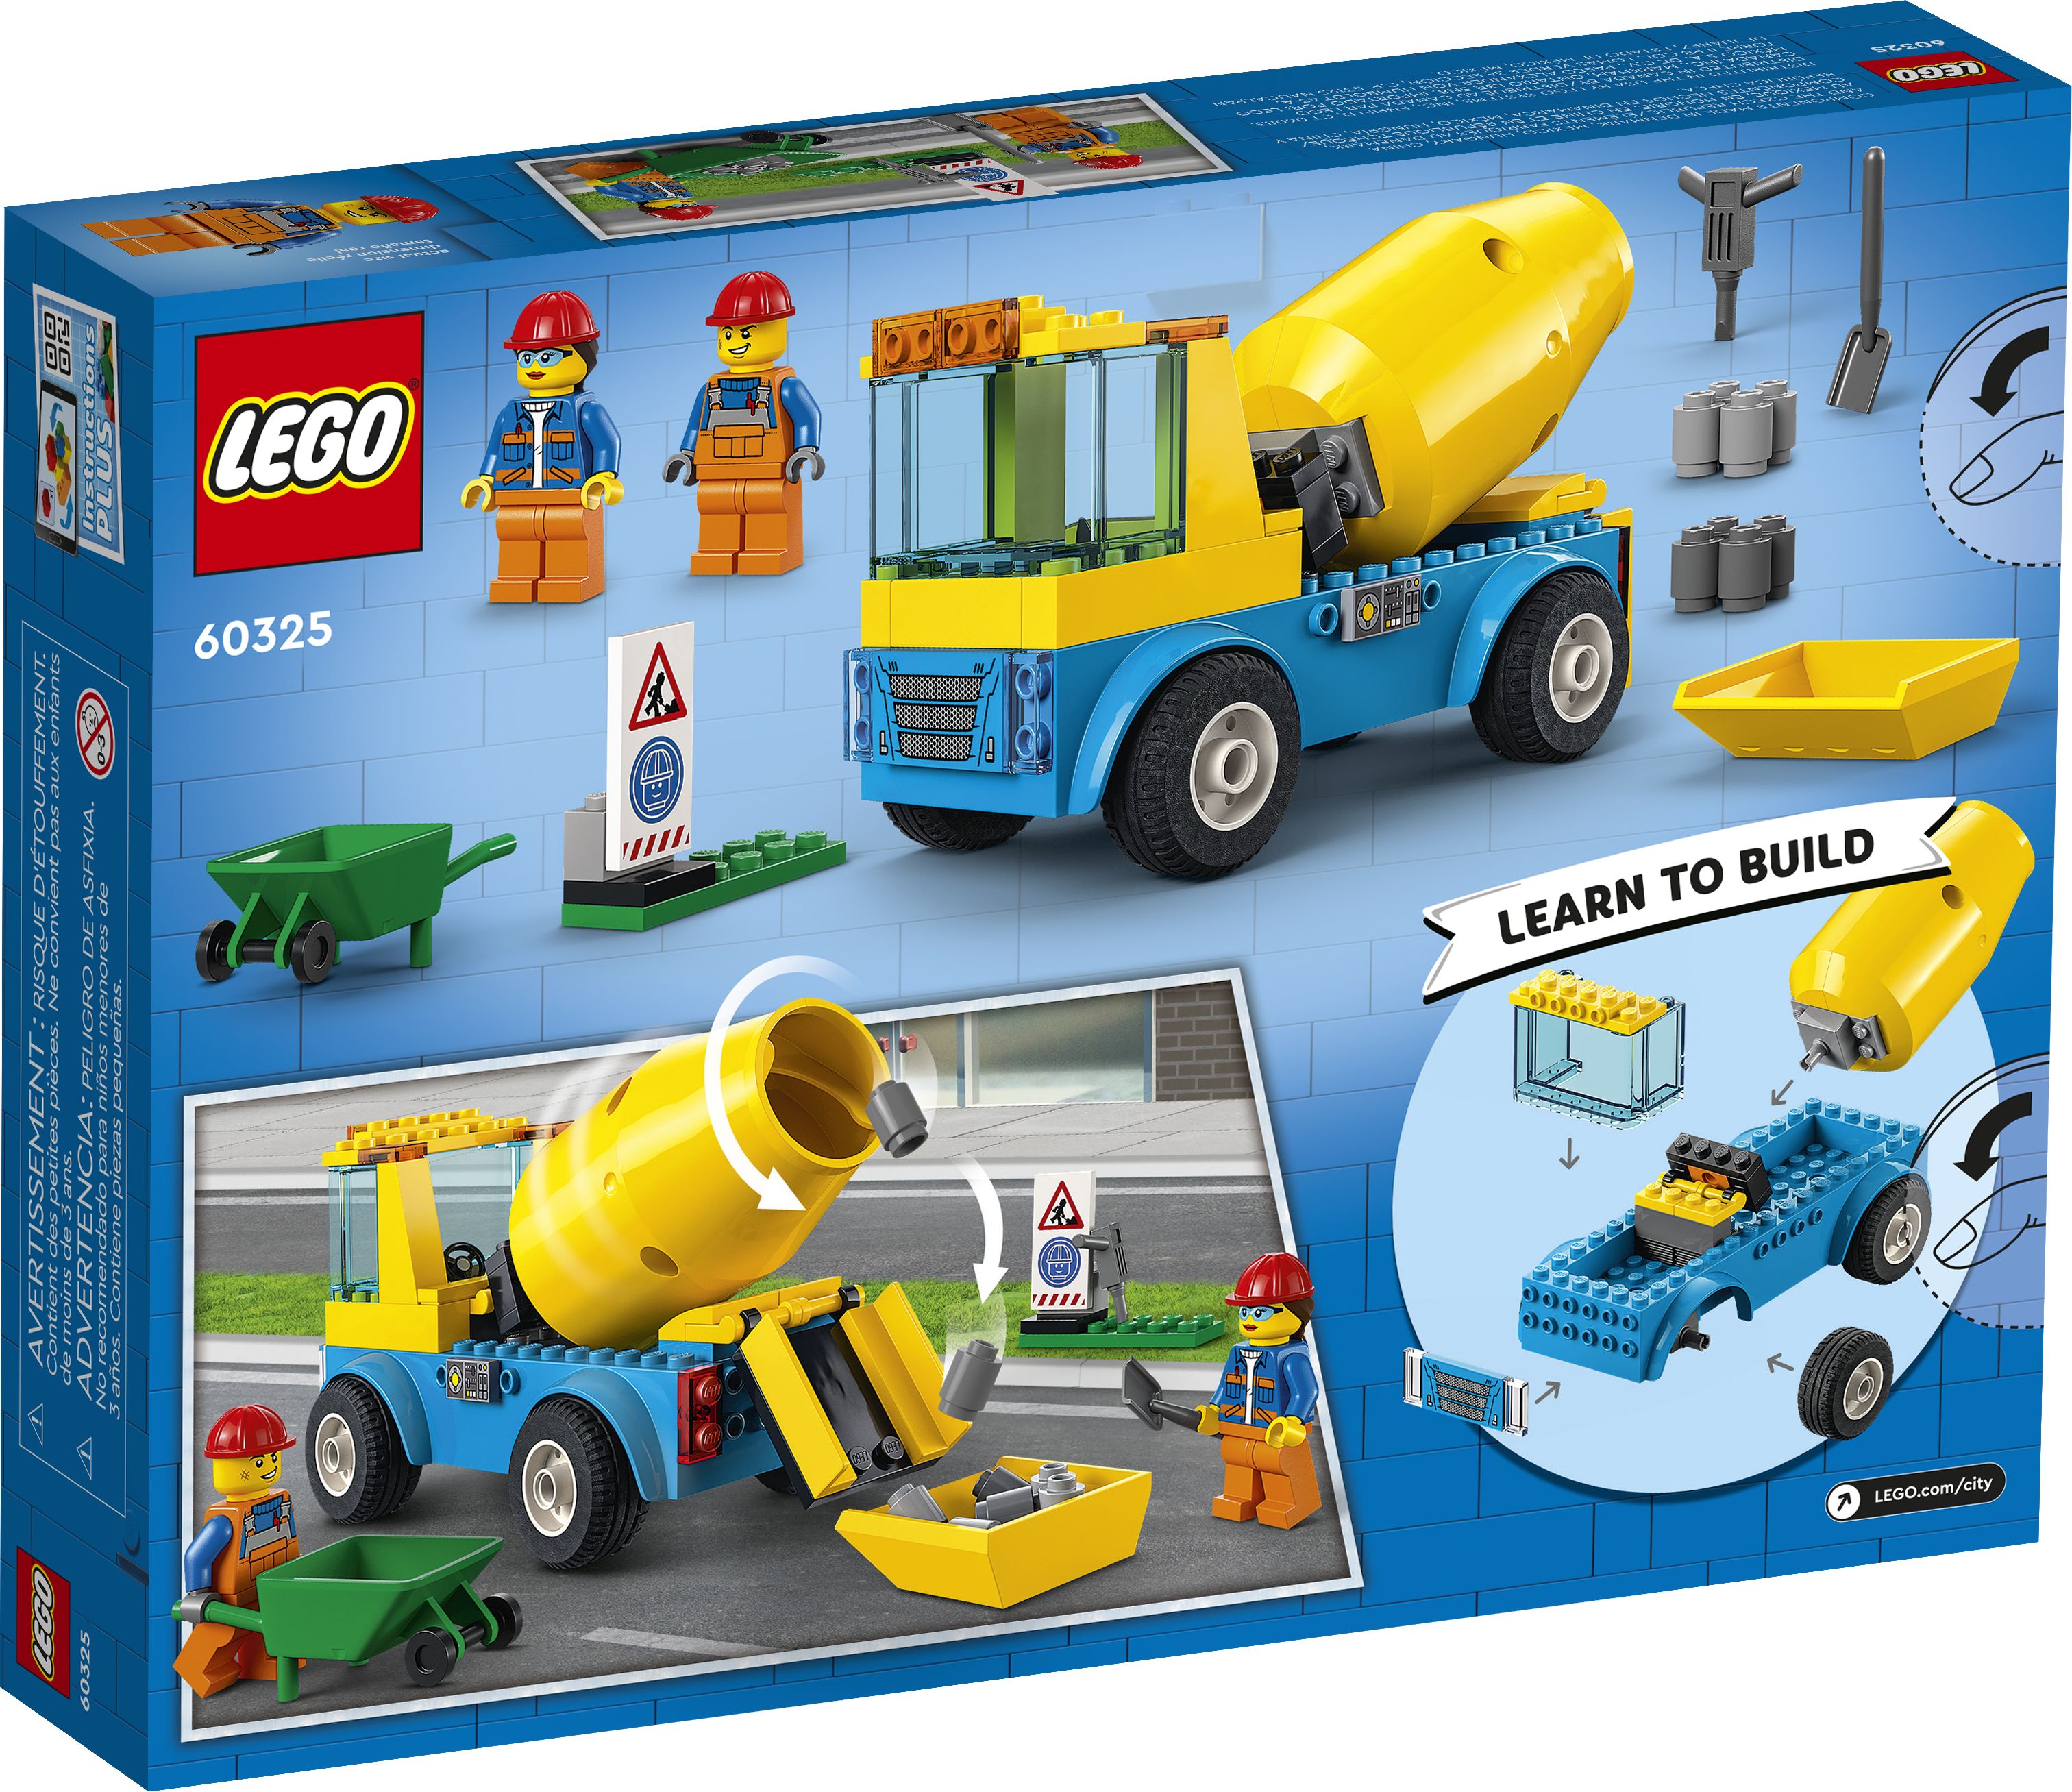 LEGO City 60325 Betonmischer LEGO_60325_Box5_v39.jpg